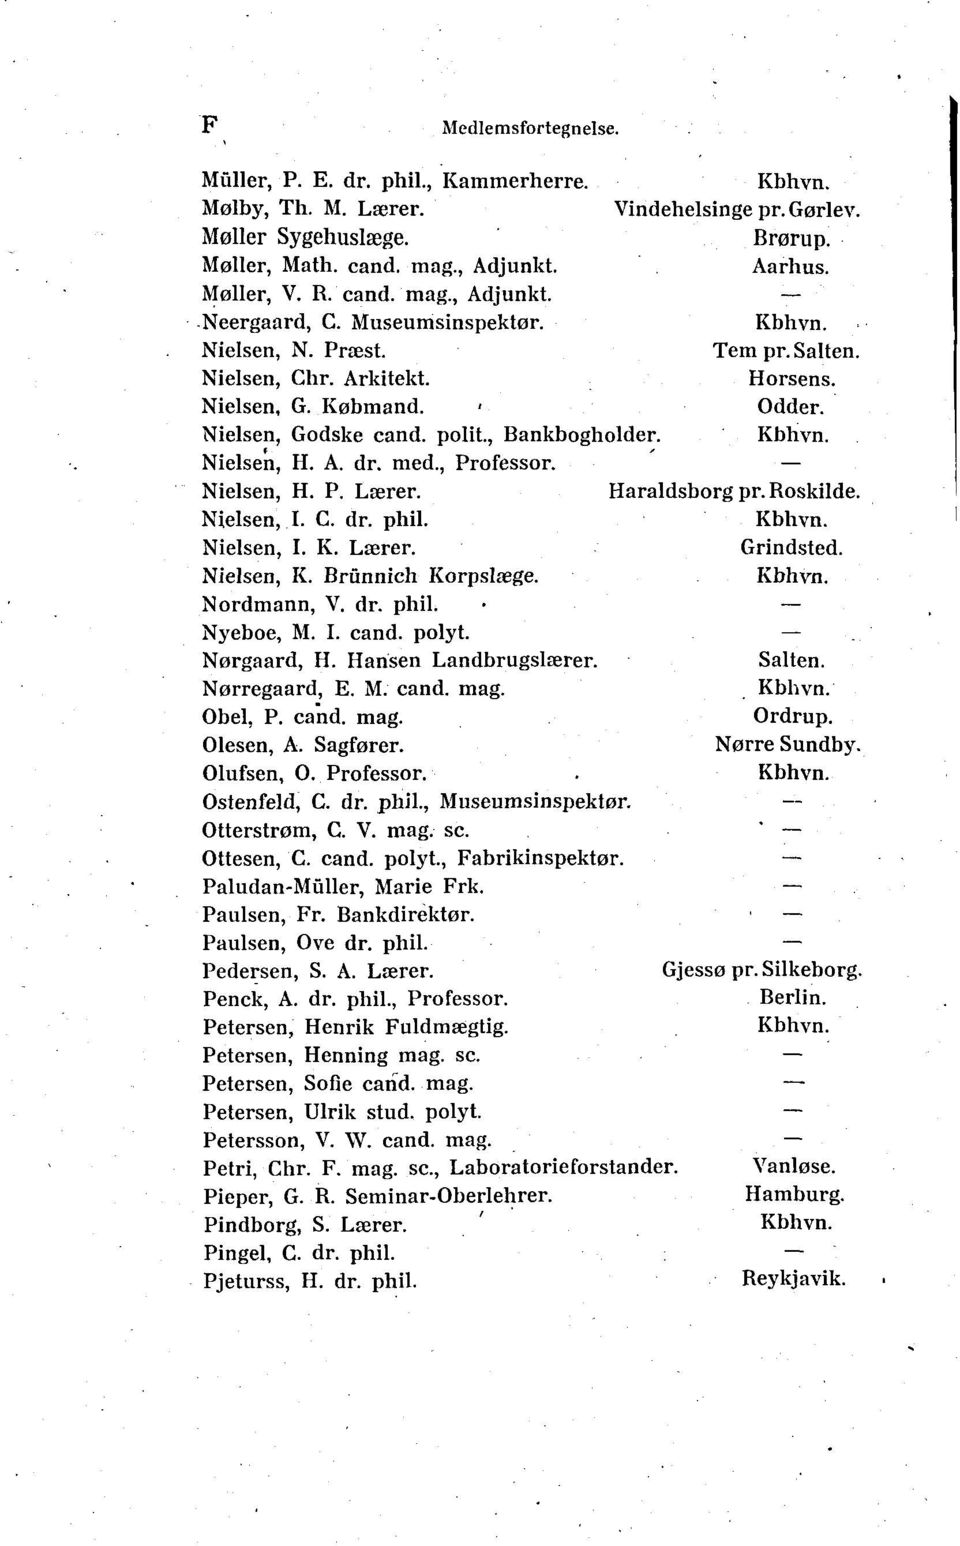 Nielsen, H. P. Lærer. Haraldsborg pr. Roskilde. Nteisen, I. C. dr. ph il. Nielsen, I. K. Lærer. Grindsted. Nielsen, K. Brunnich Korpslæge. Nordrnann, V. dr. phil. Nyeboe, M. I. cand. polyt.